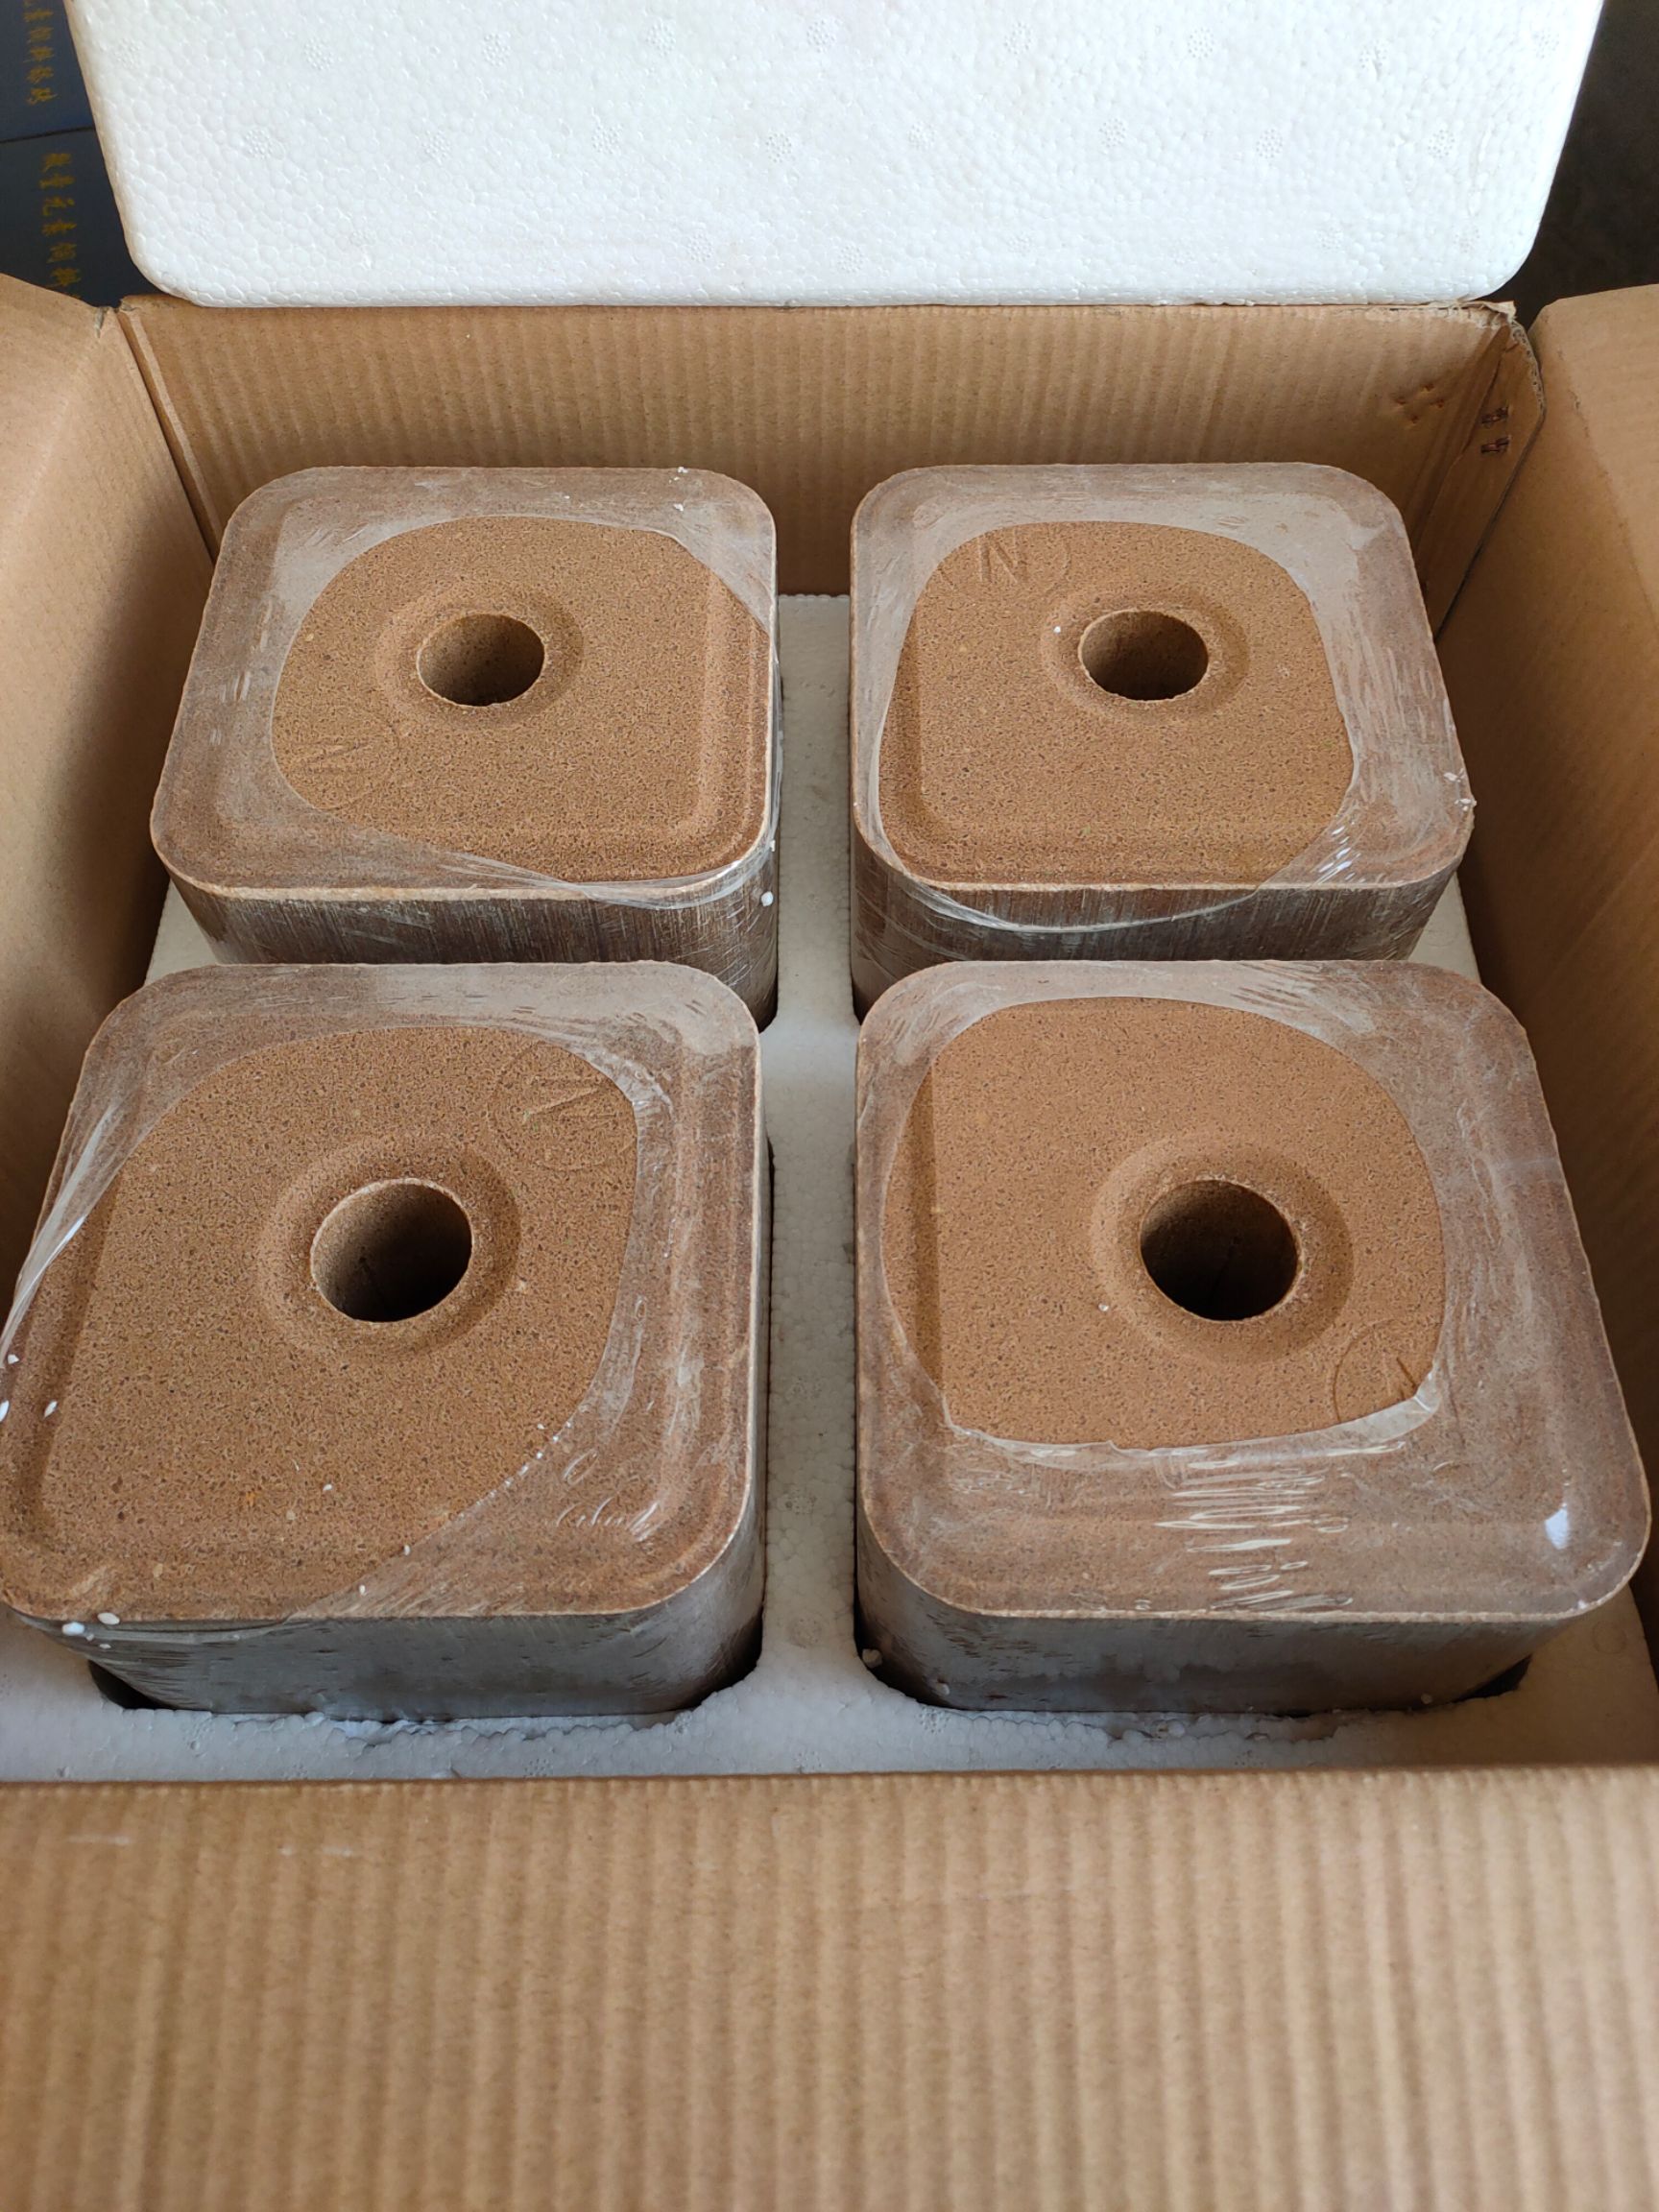 海兴县宇牧牛羊舔砖产品泡沫箱装可选择含量装箱出厂价1150一吨